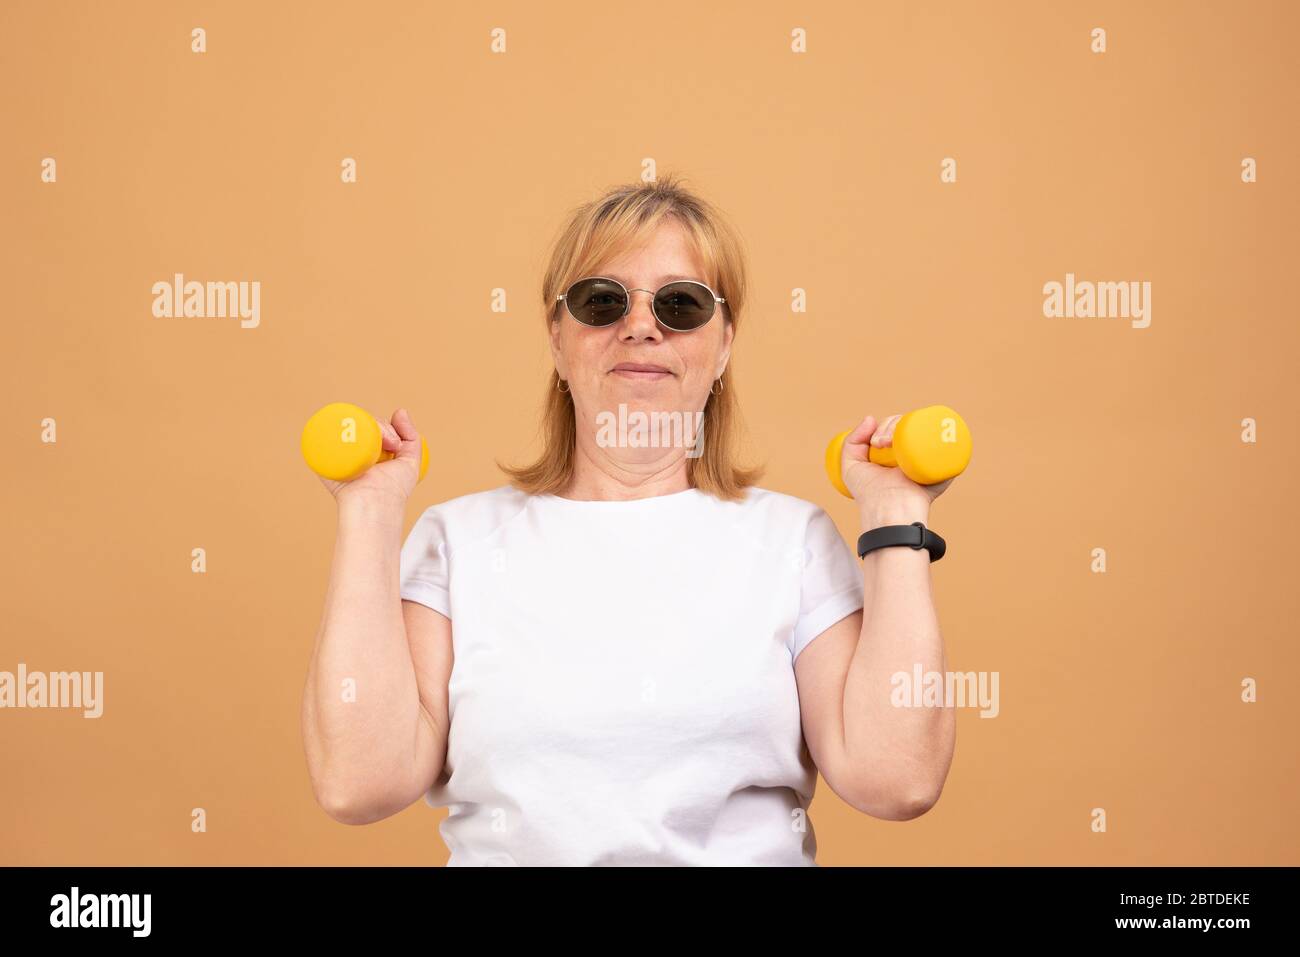 Menschen, Alter, Sport und aktives Lifestyle-Konzept. Bild von glücklichen positiven reifen Frau im Ruhestand in T-Shirt tun Übung mit freien Gewichten im Fitnessstudio Stockfoto